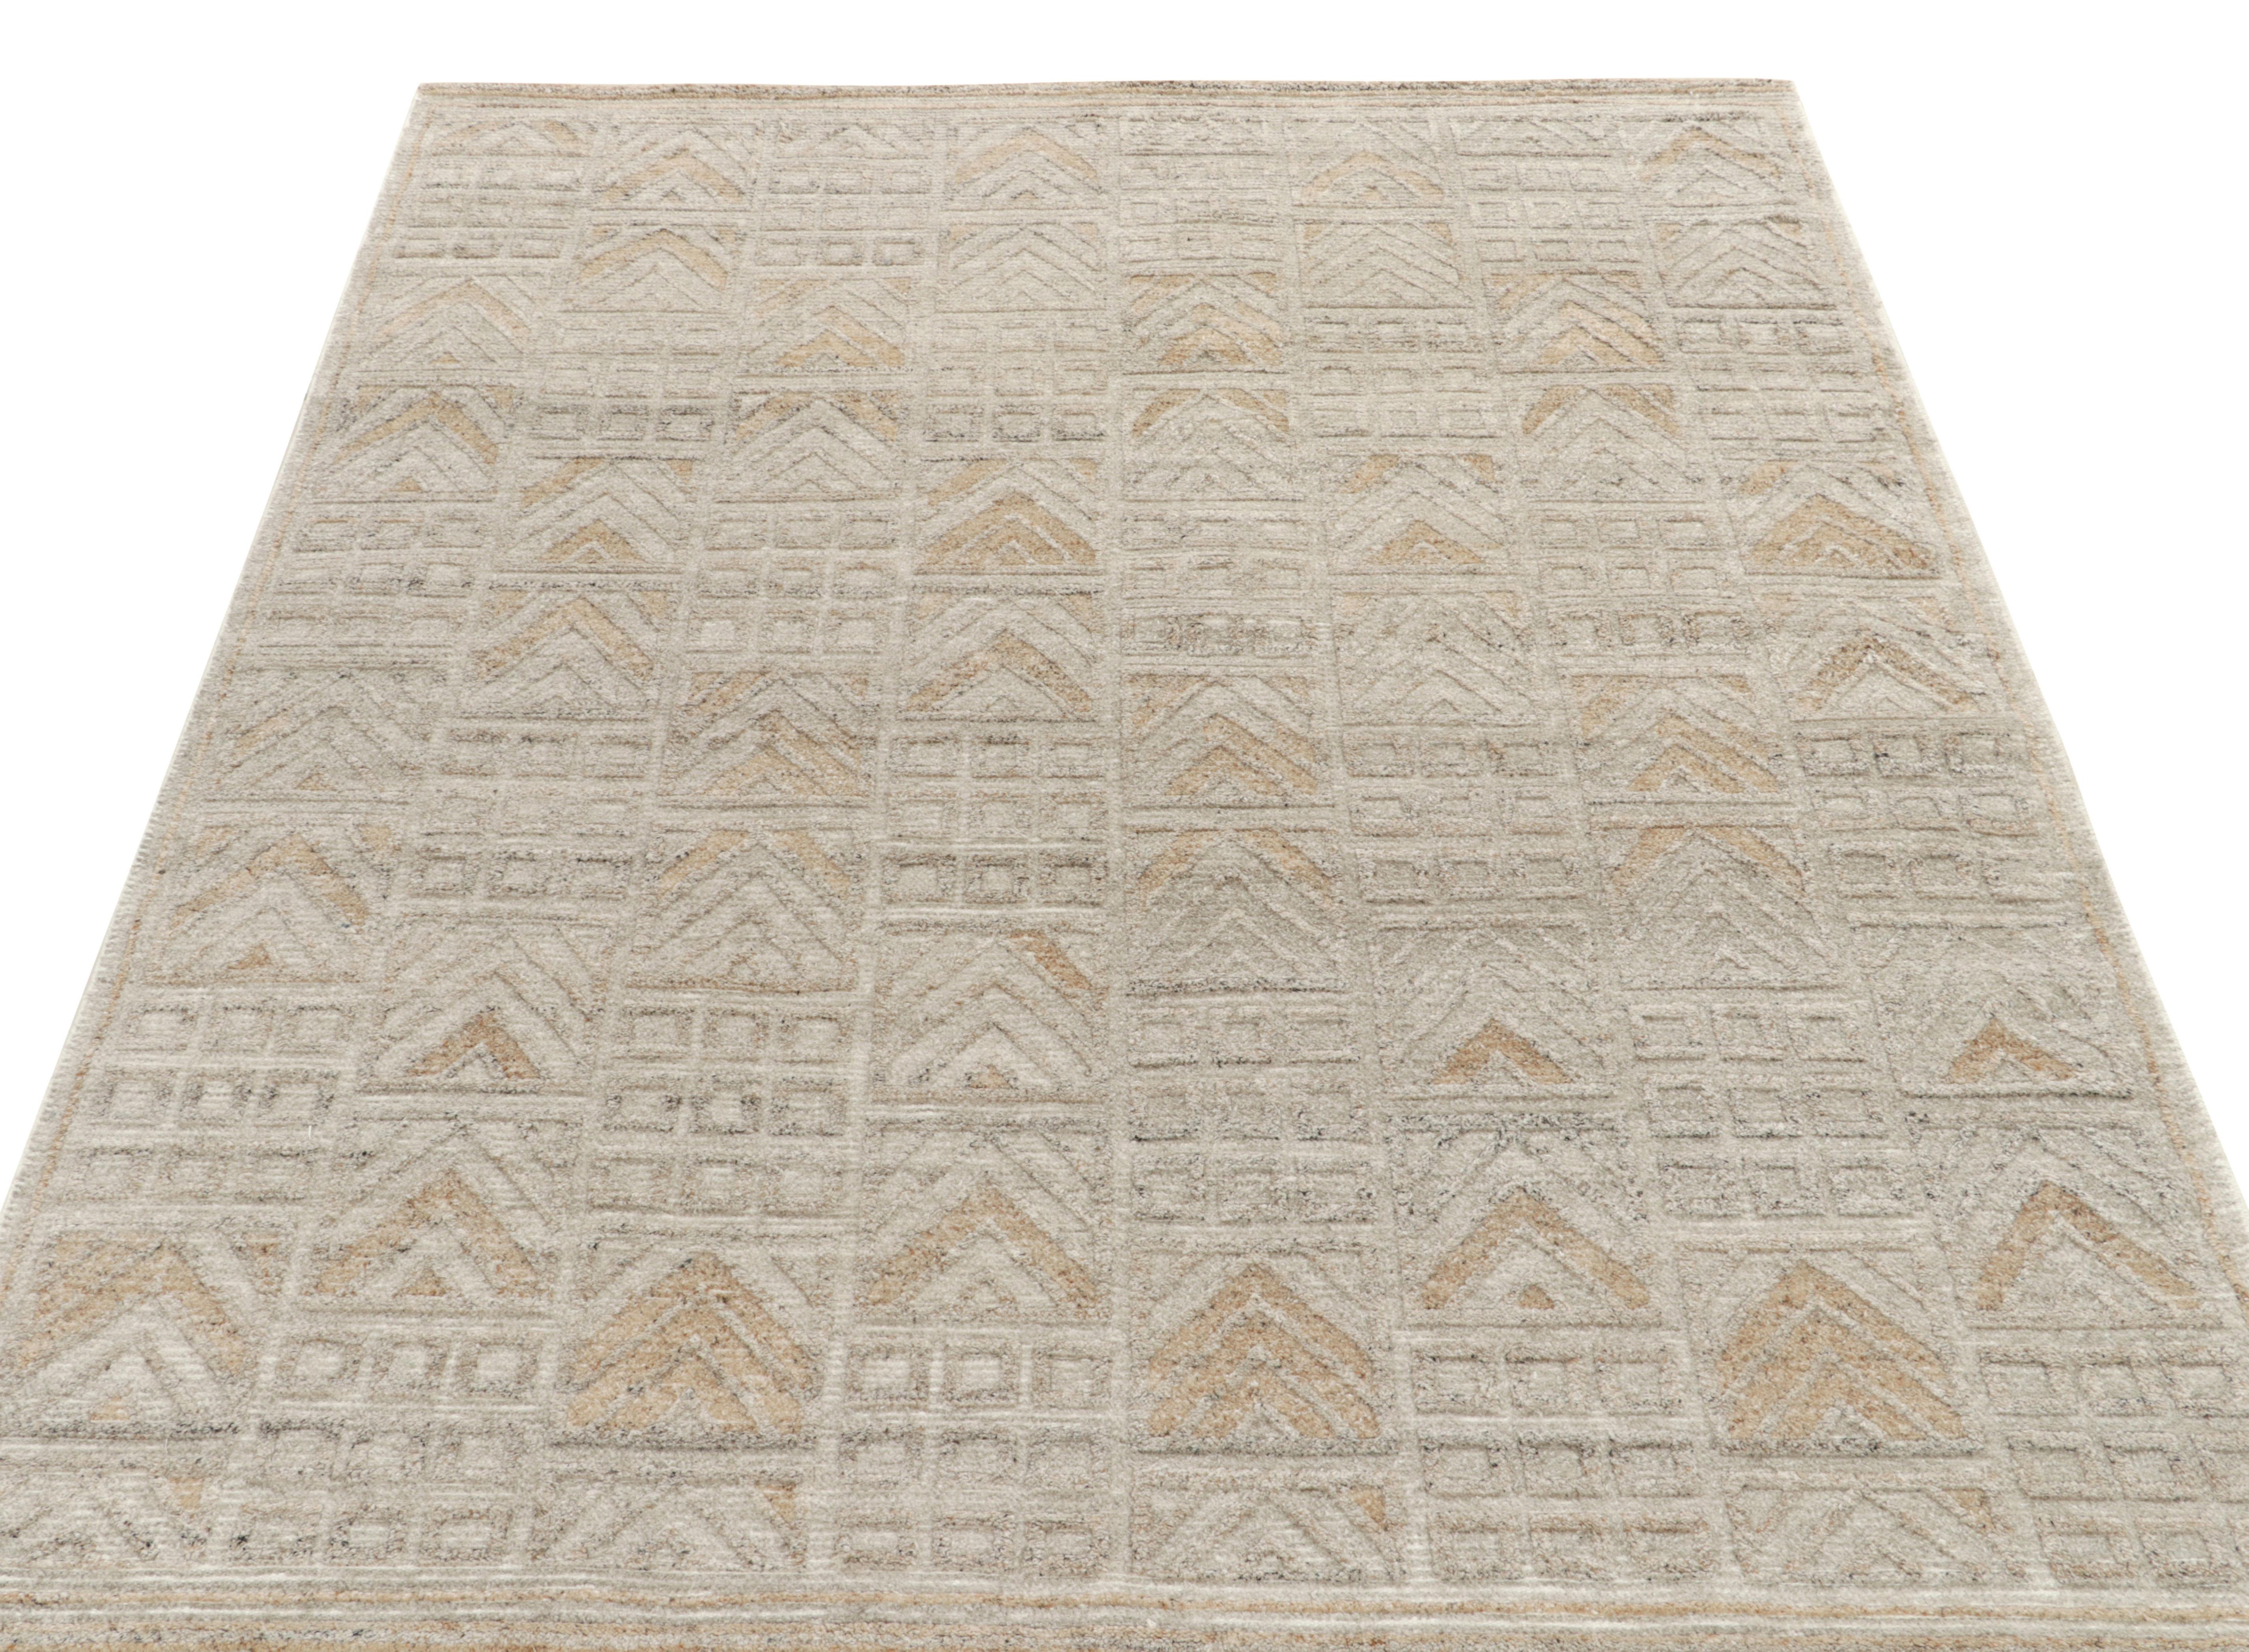 Ein handgeknüpfter Teppich nach Maß, erhältlich in der preisgekrönten skandinavischen Auswahl von Rug & Kilim. Die Balken im schwedischen Deco-Stil haben ein raffiniertes geometrisches Muster in einem glänzenden Weiß, Grau und Beige-Braun, das den